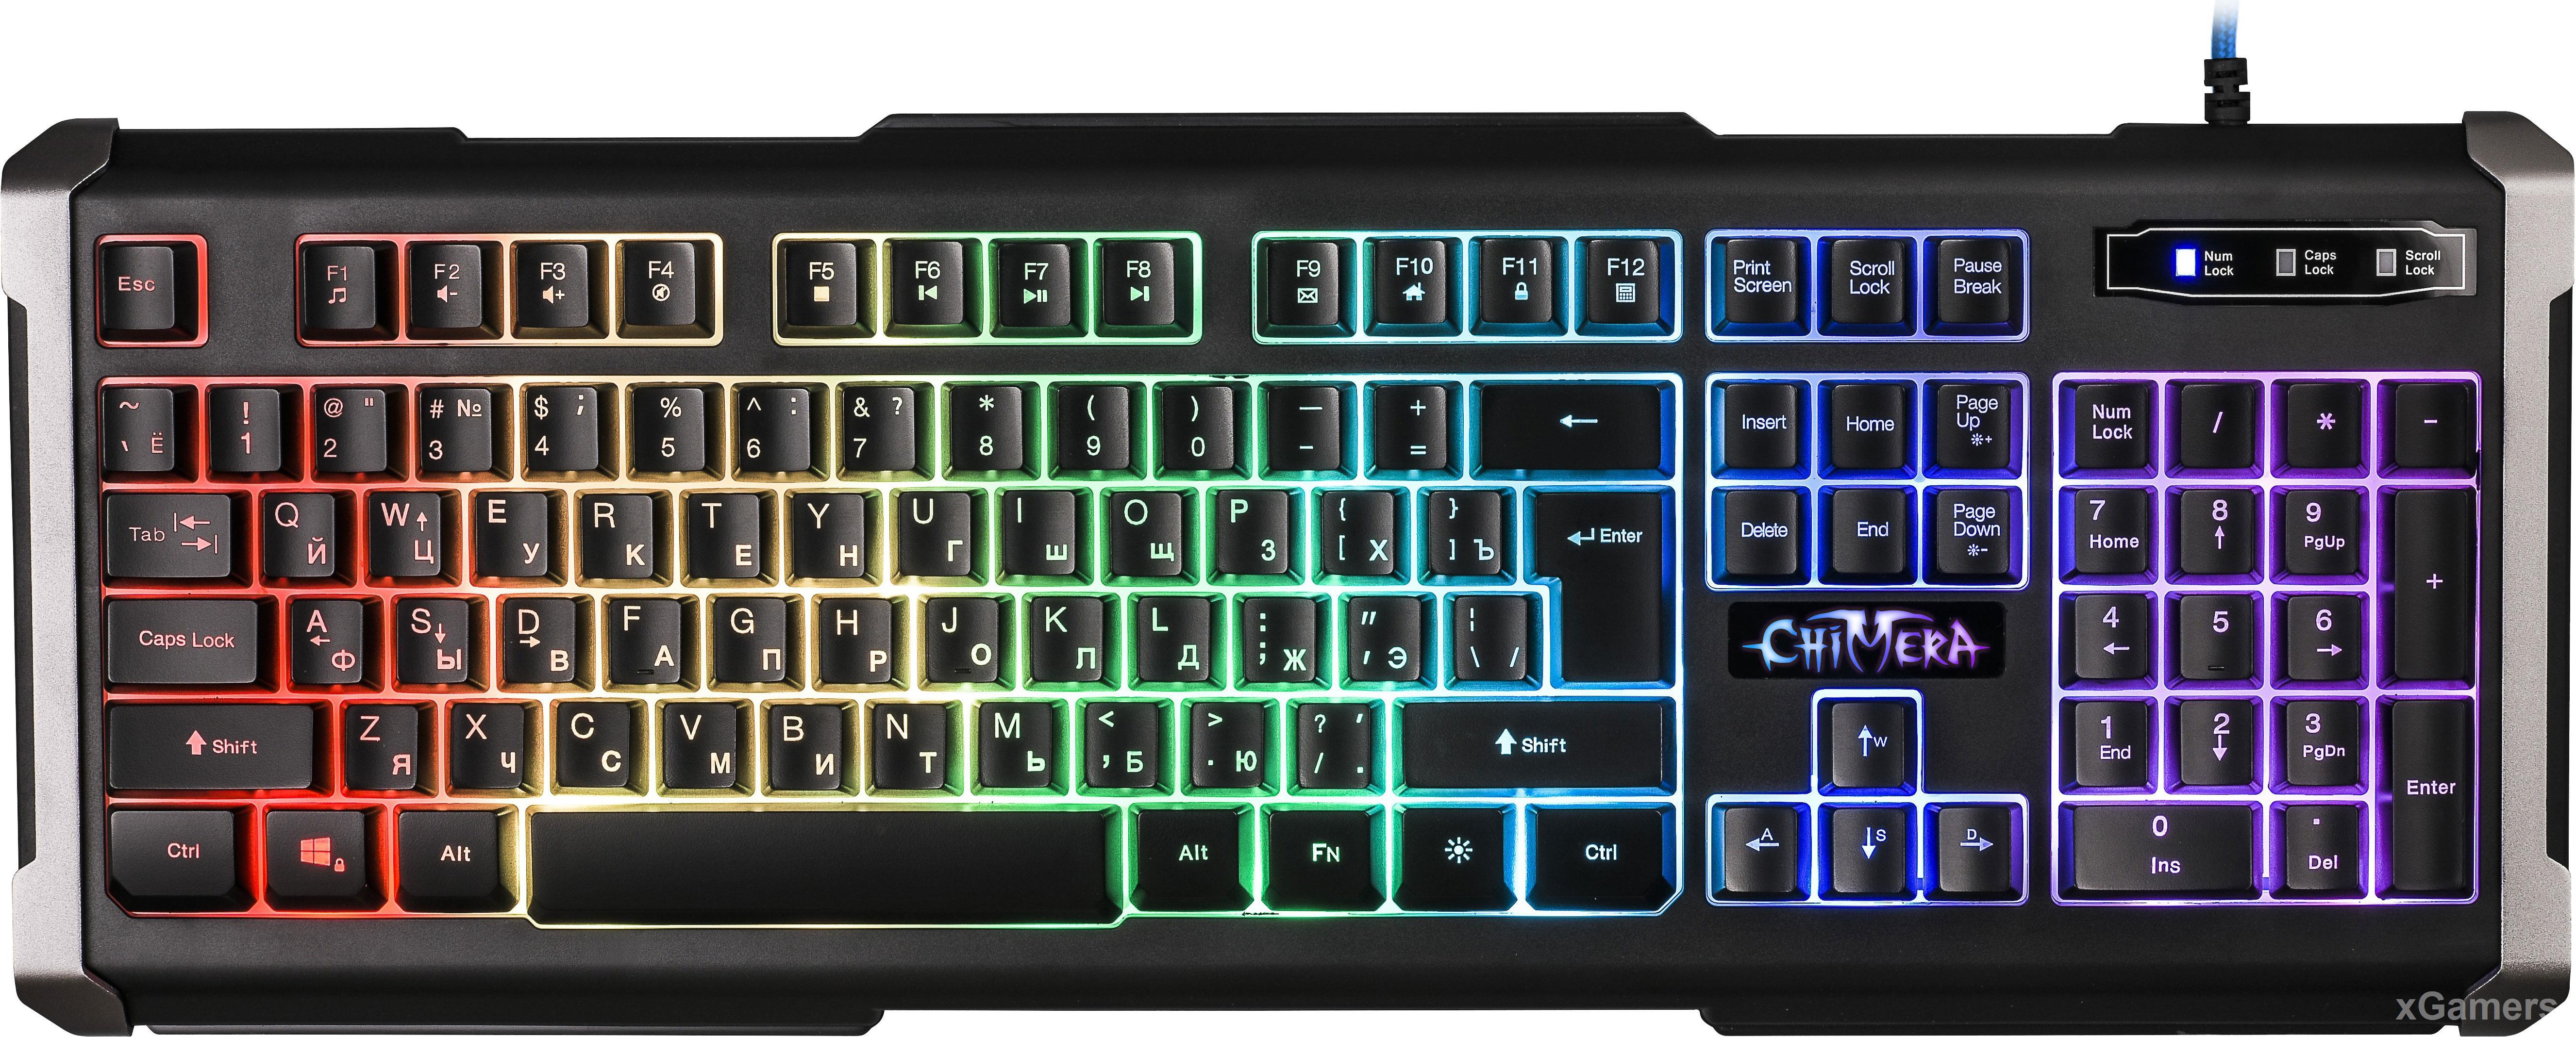 Defender Chimera GK-280DL - надежная бюджетная клавиатура